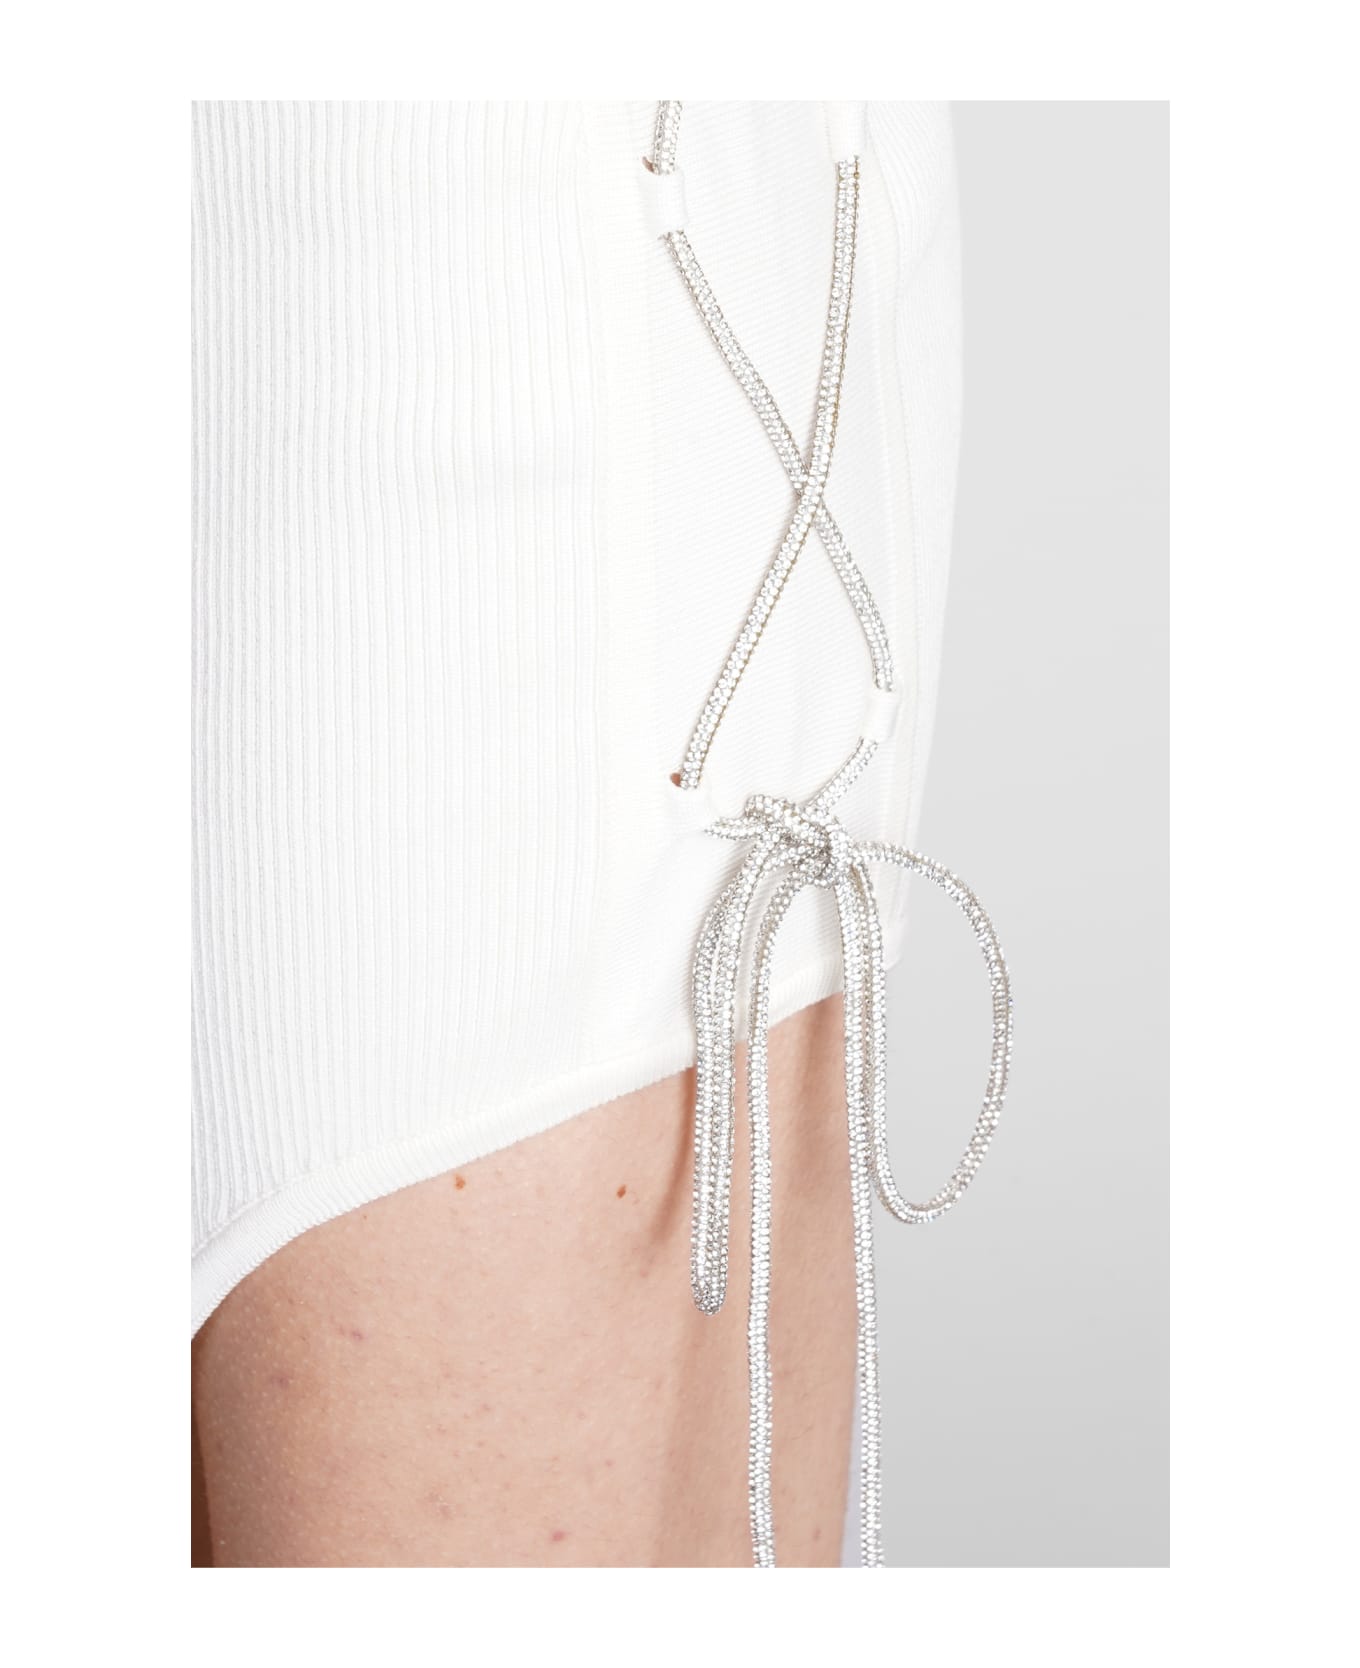 Giuseppe di Morabito Dress In White Cotton - White ワンピース＆ドレス